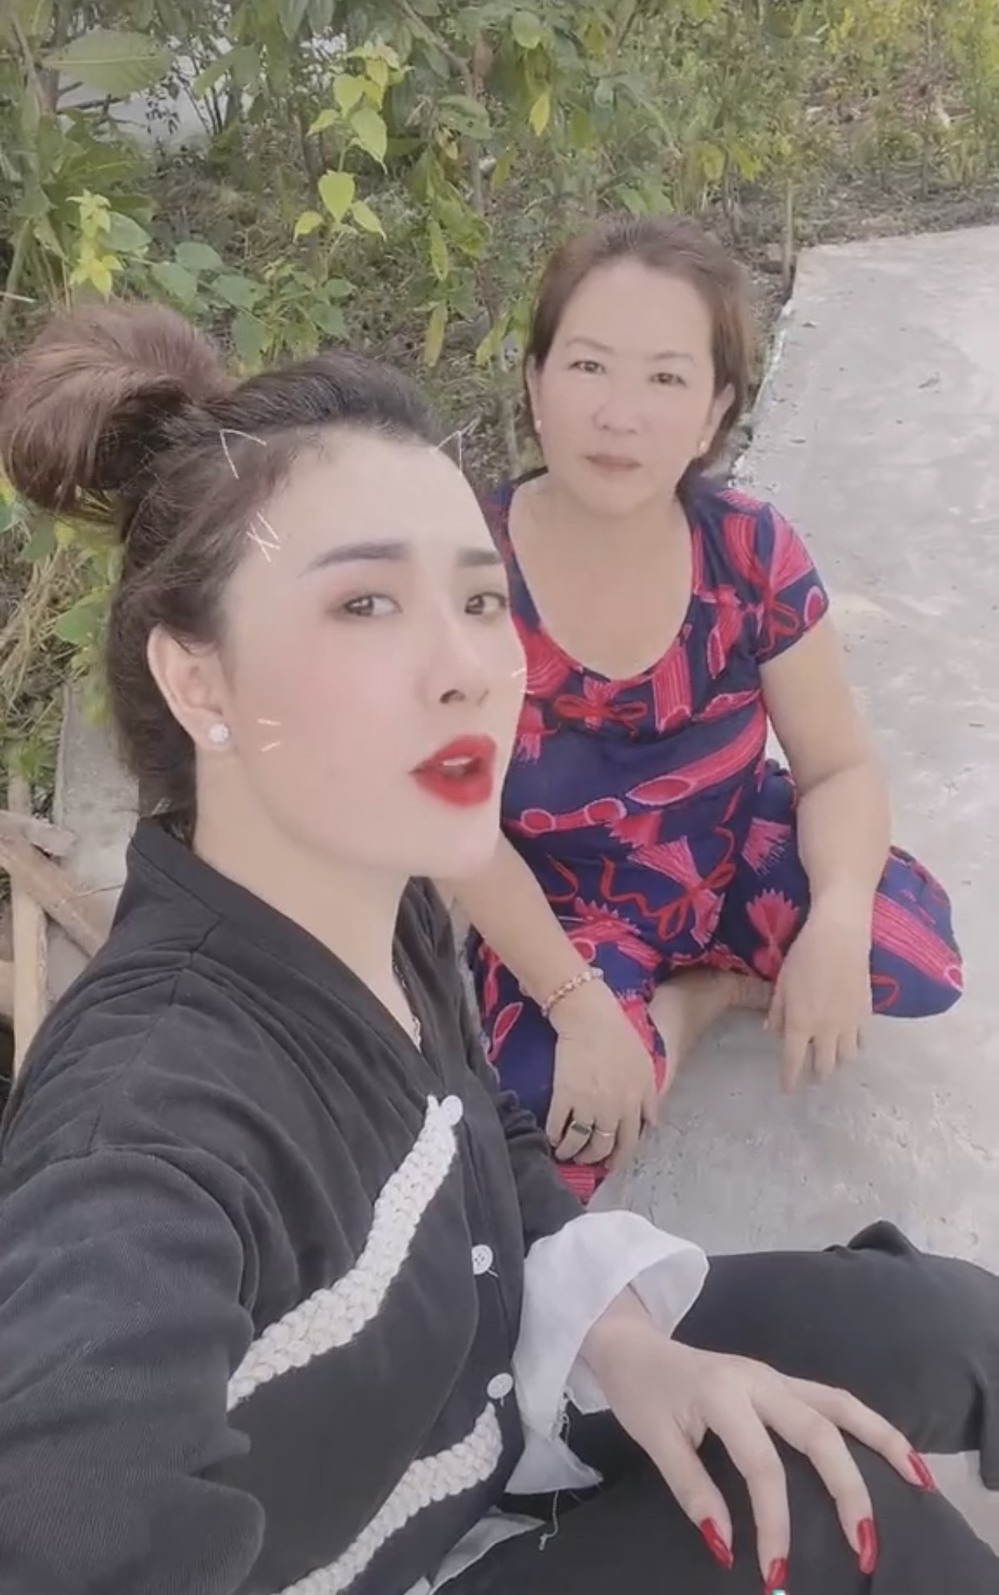  
TikToker A. với người mẹ trong đoạn clip (Ảnh chụp màn hình)